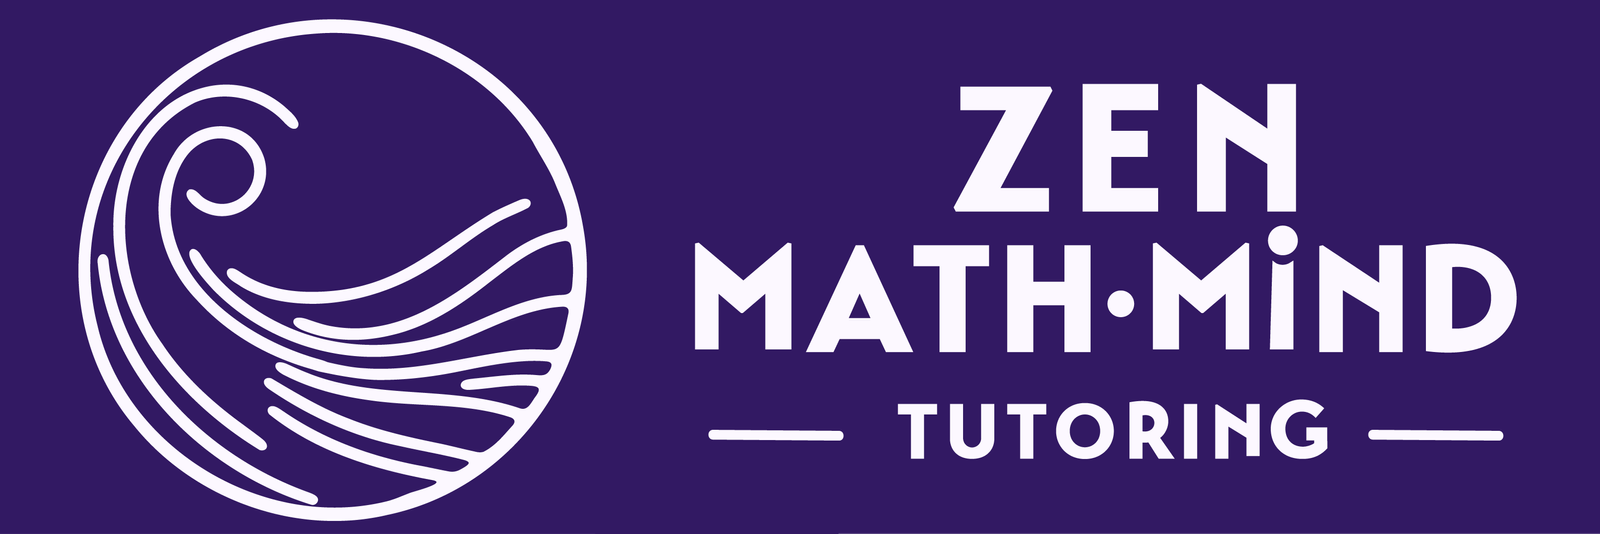 Zen MathMind Tutoring